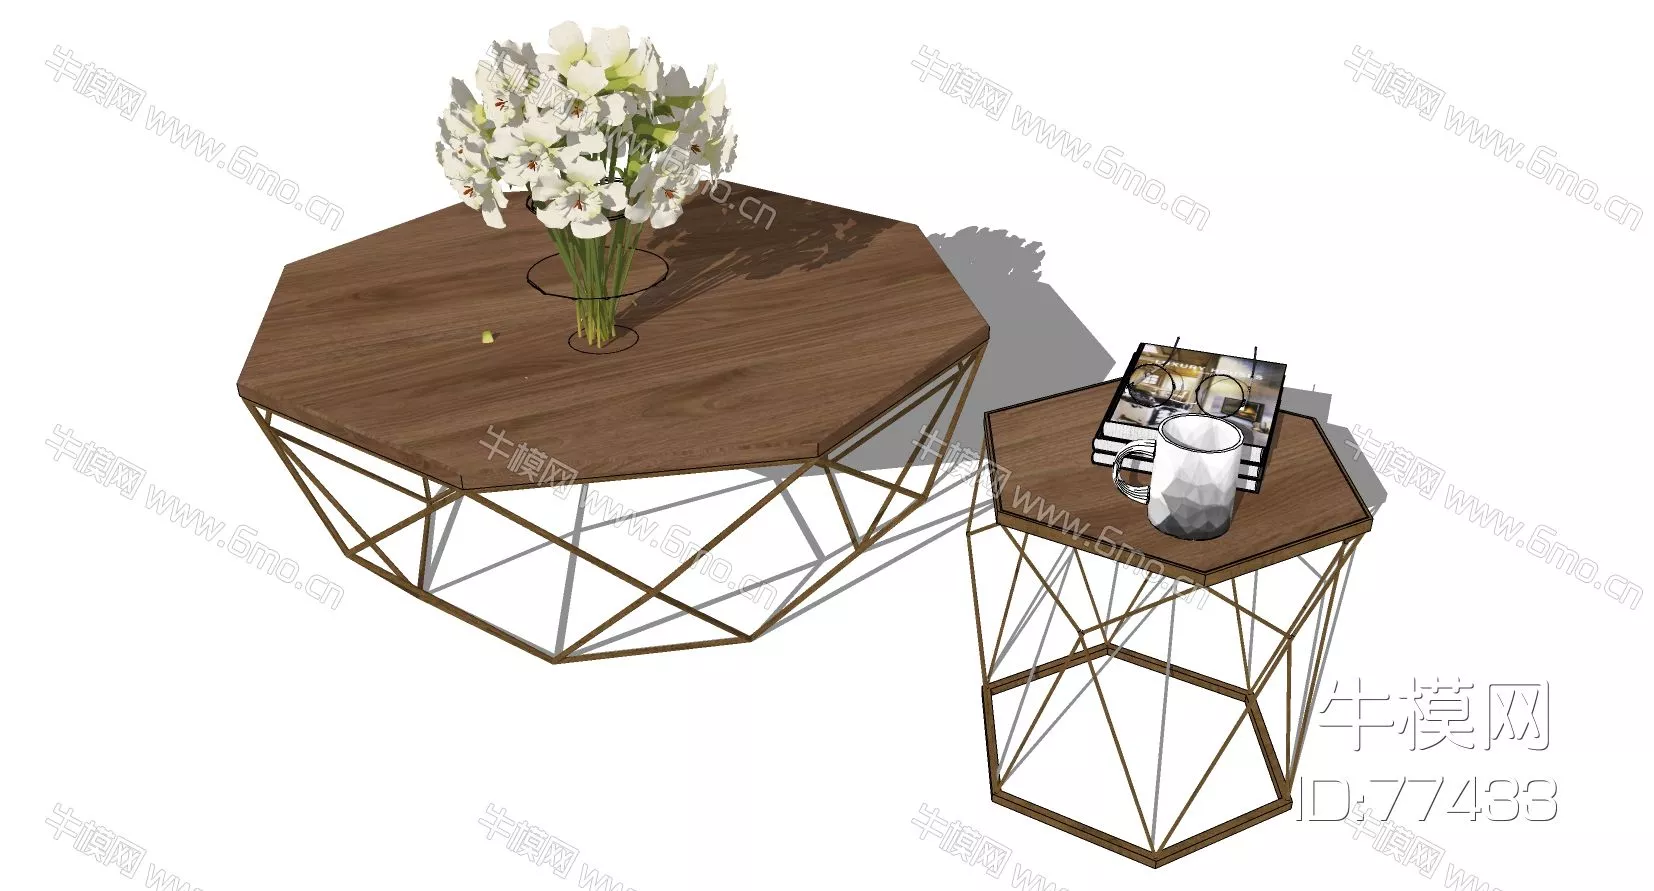 MODERN SIDE TABLE - SKETCHUP 3D MODEL - ENSCAPE - 77433